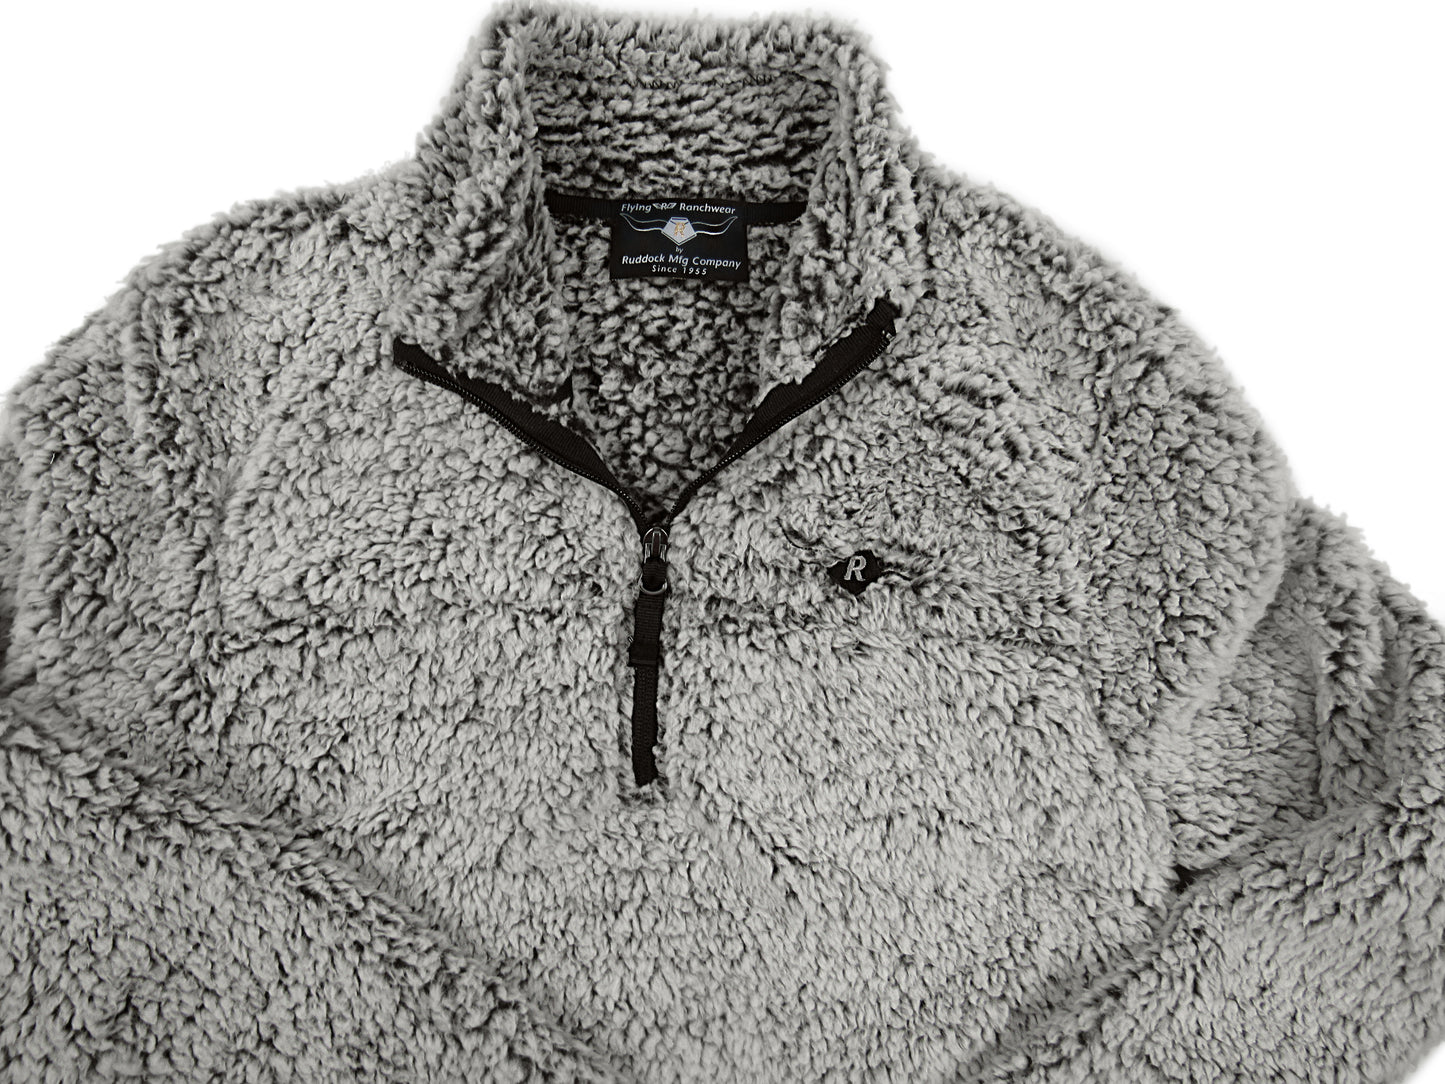 Ladies sherpa fleece 1/4 zip in gray heather